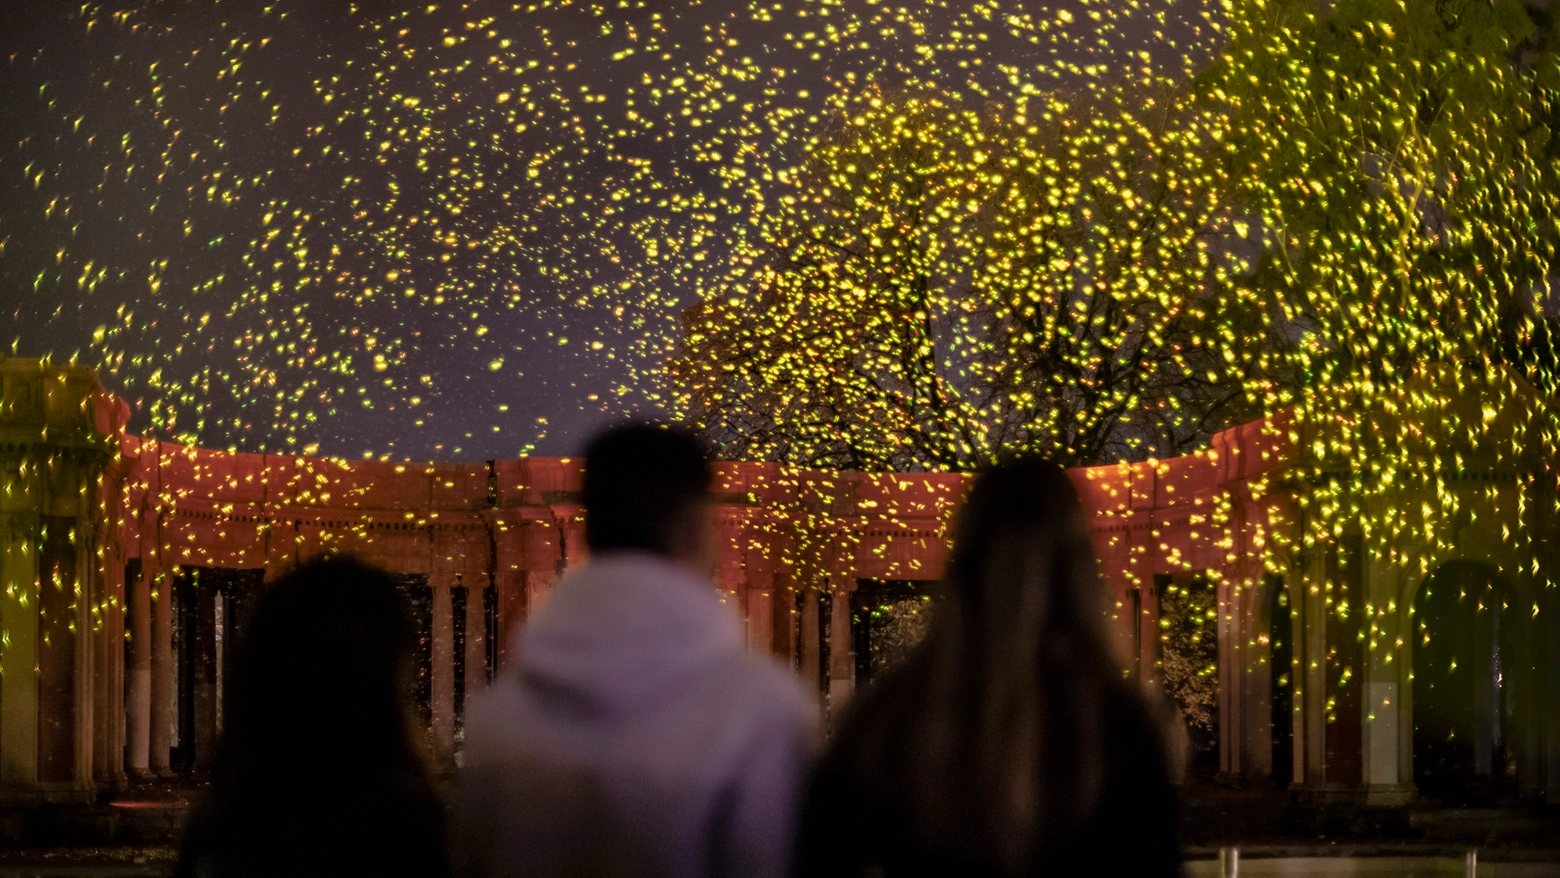 Spark, l’artista olandese con gli unici fuochi d’artificio organici, presenterà una performance poetica di migliaia di scintille luminose biodegradabili che fluttuano organicamente nell’aria